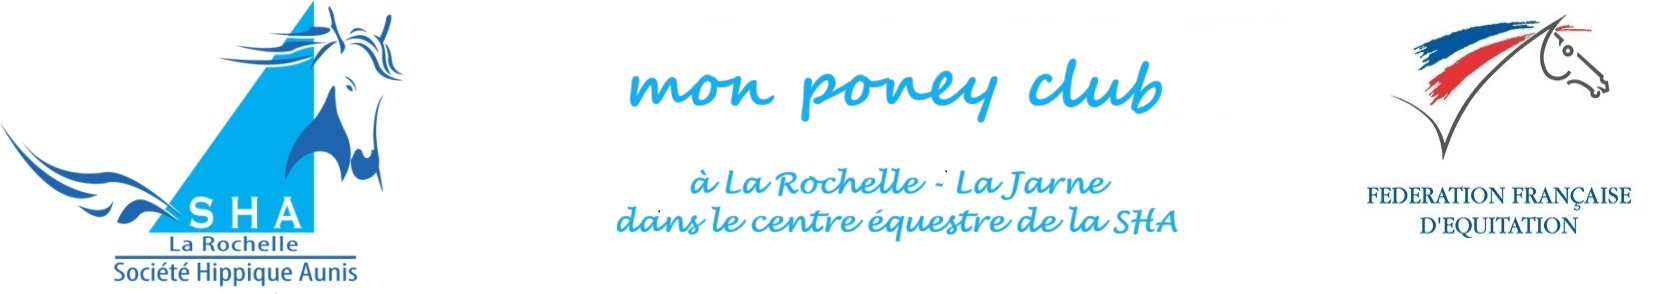 Poney Club de la Société Hippique Aunis La Rochelle